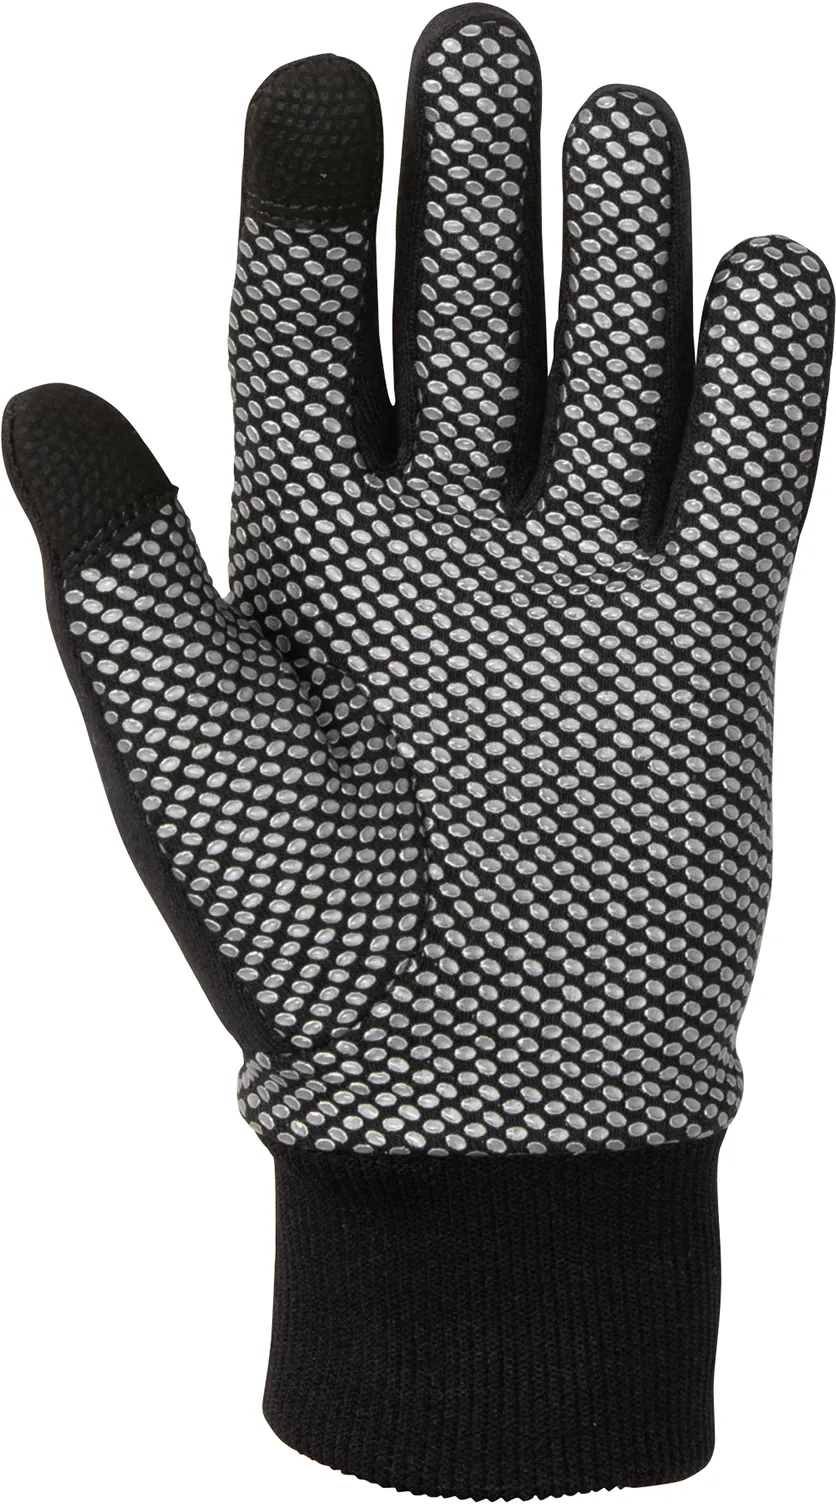 Golfino Functional Winter Handschuhe, schwarz